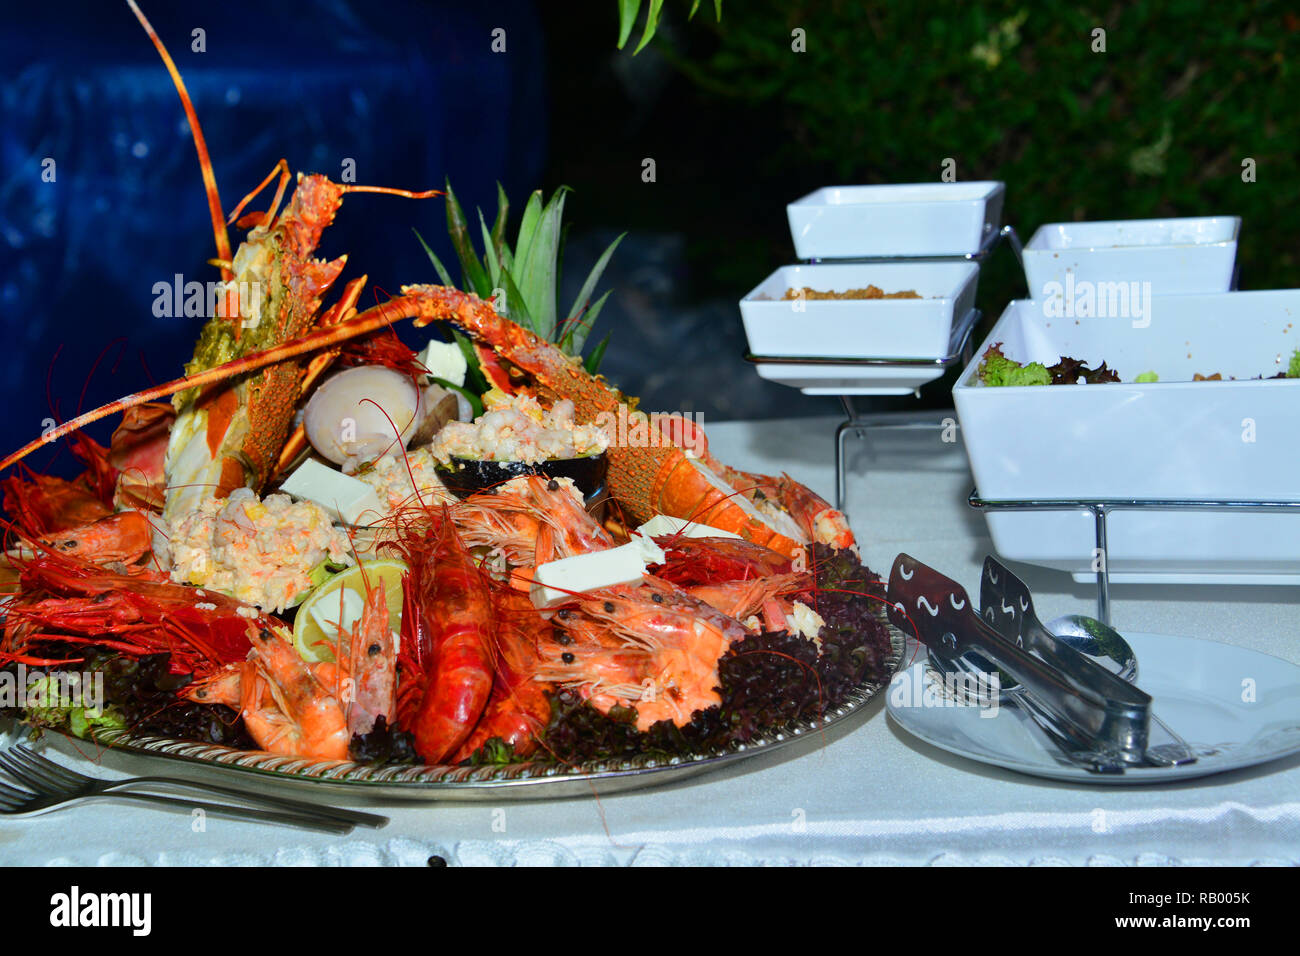 Salade marocaine aux crevettes et fruits pour des mariages et événements. Banque D'Images